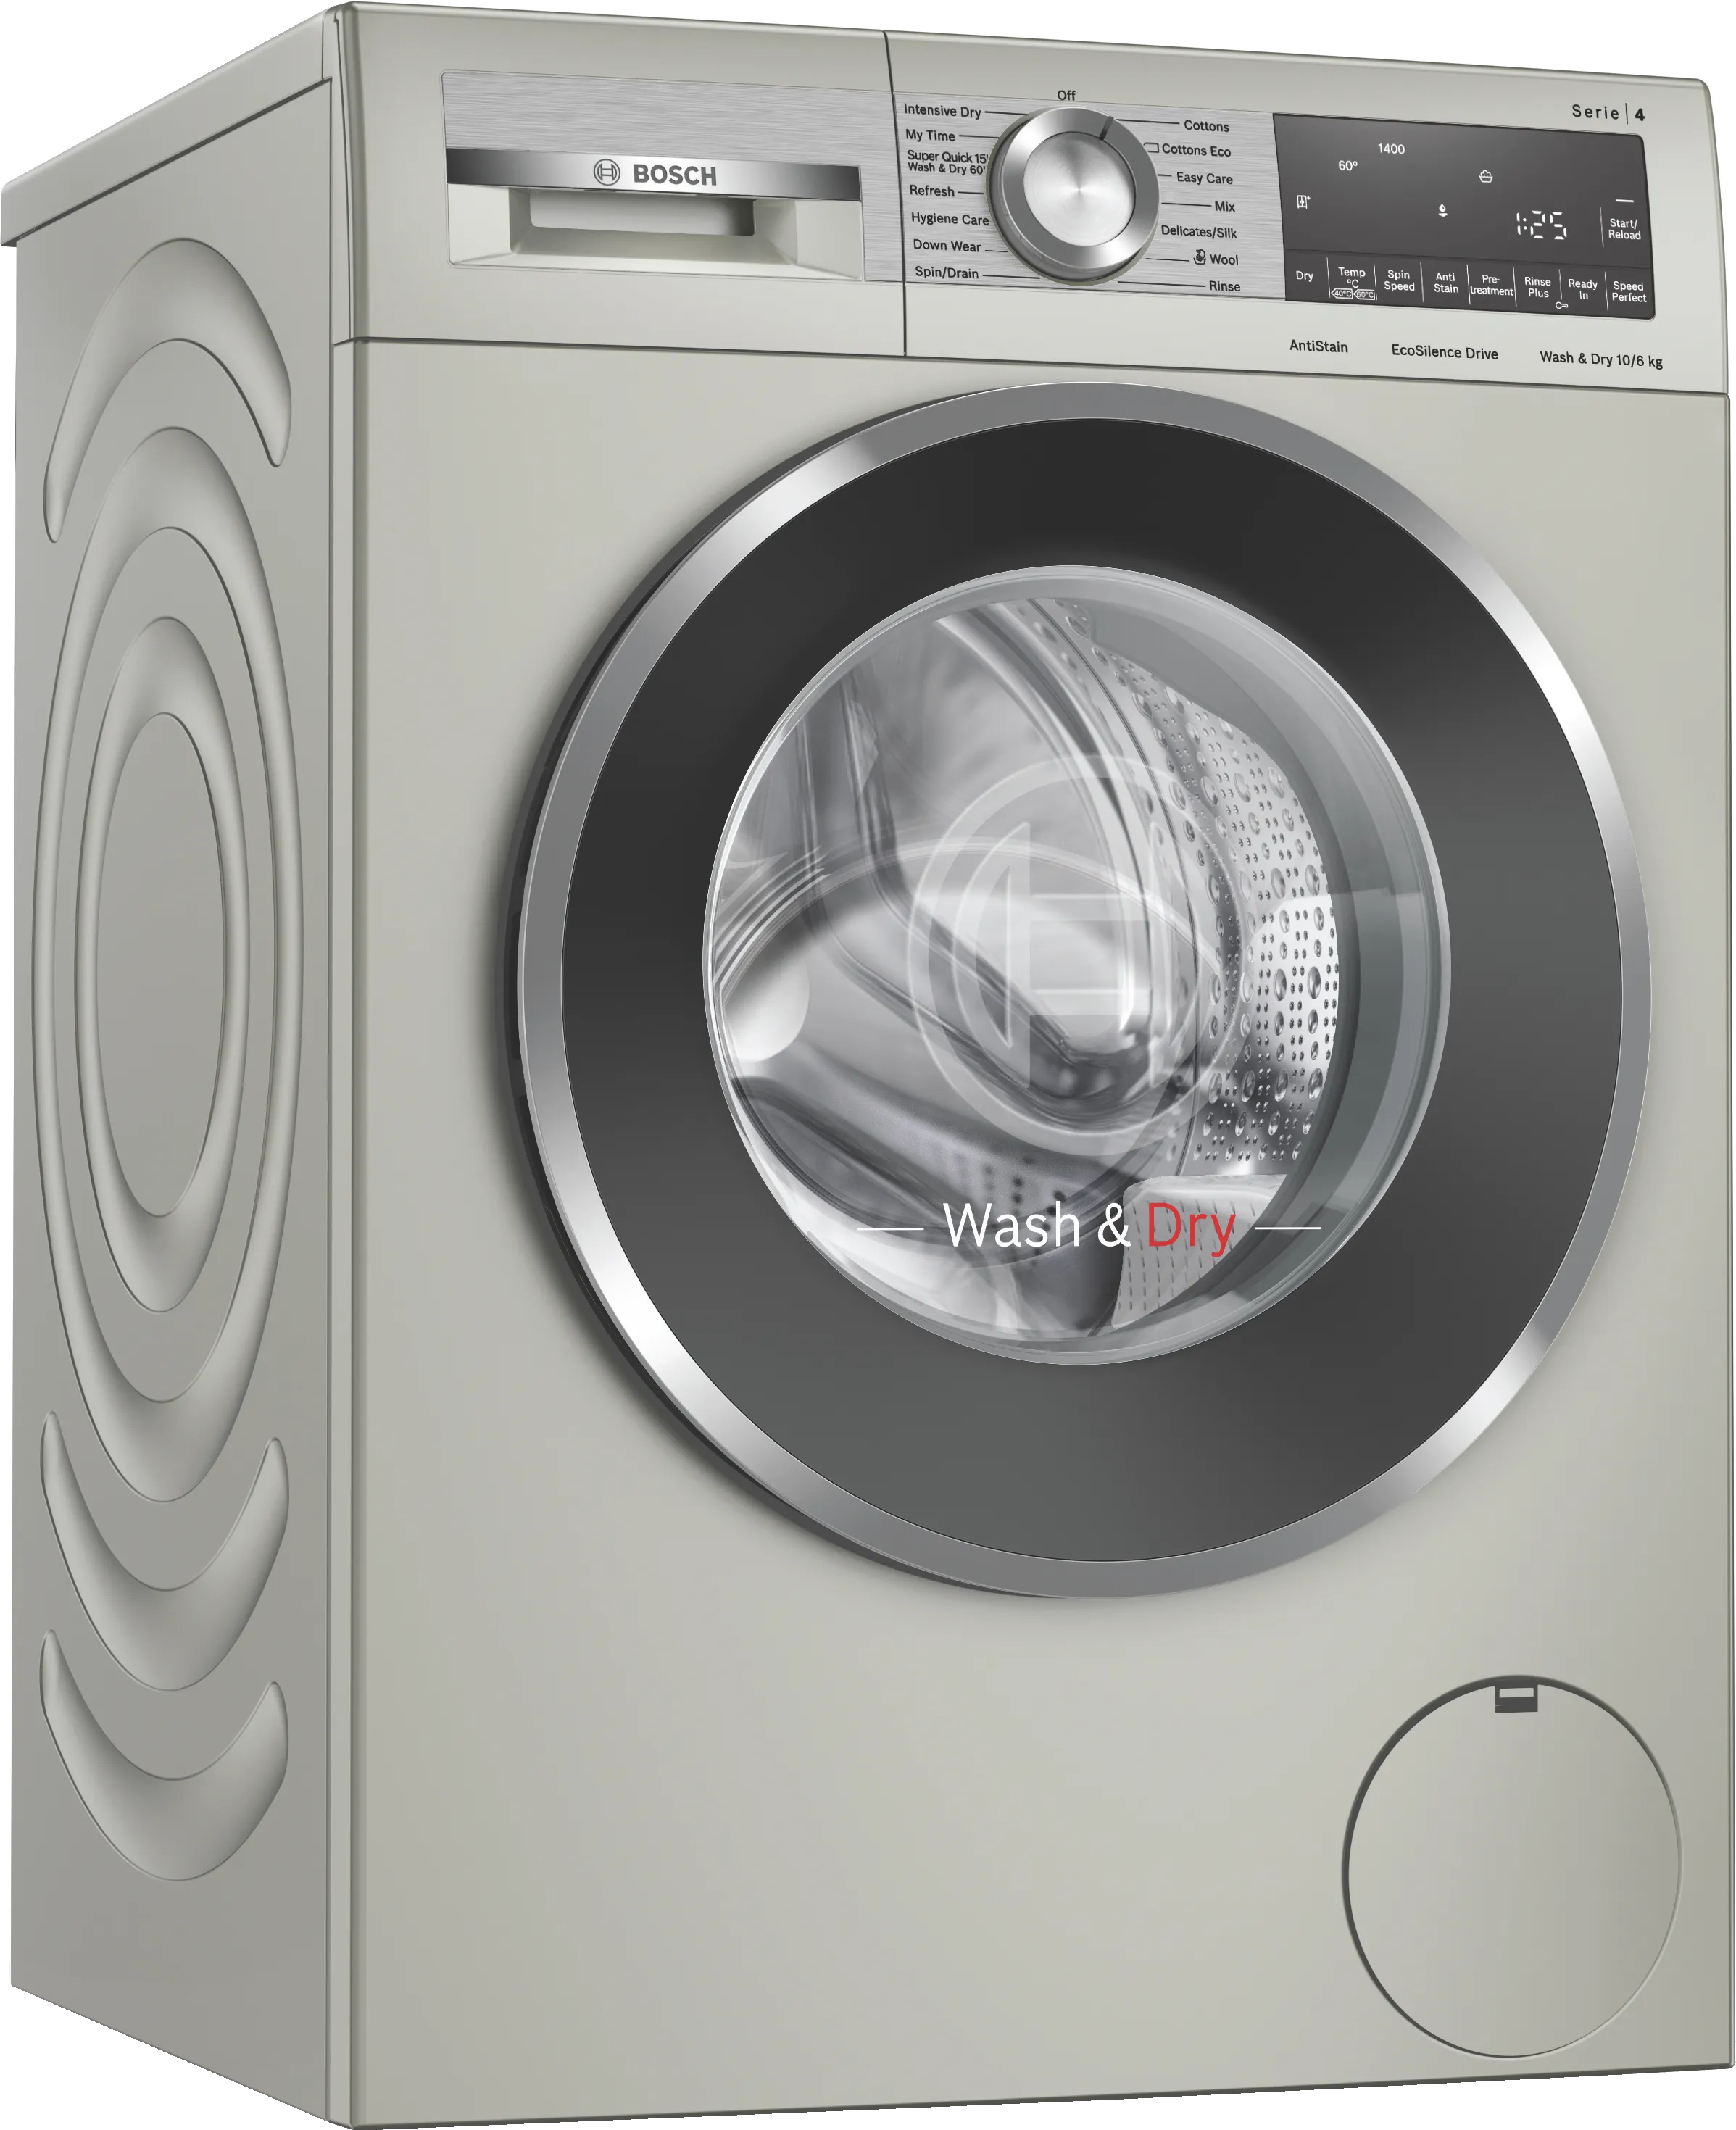 Series 4 Washer Dryer 10/6 kg , Silver inox 